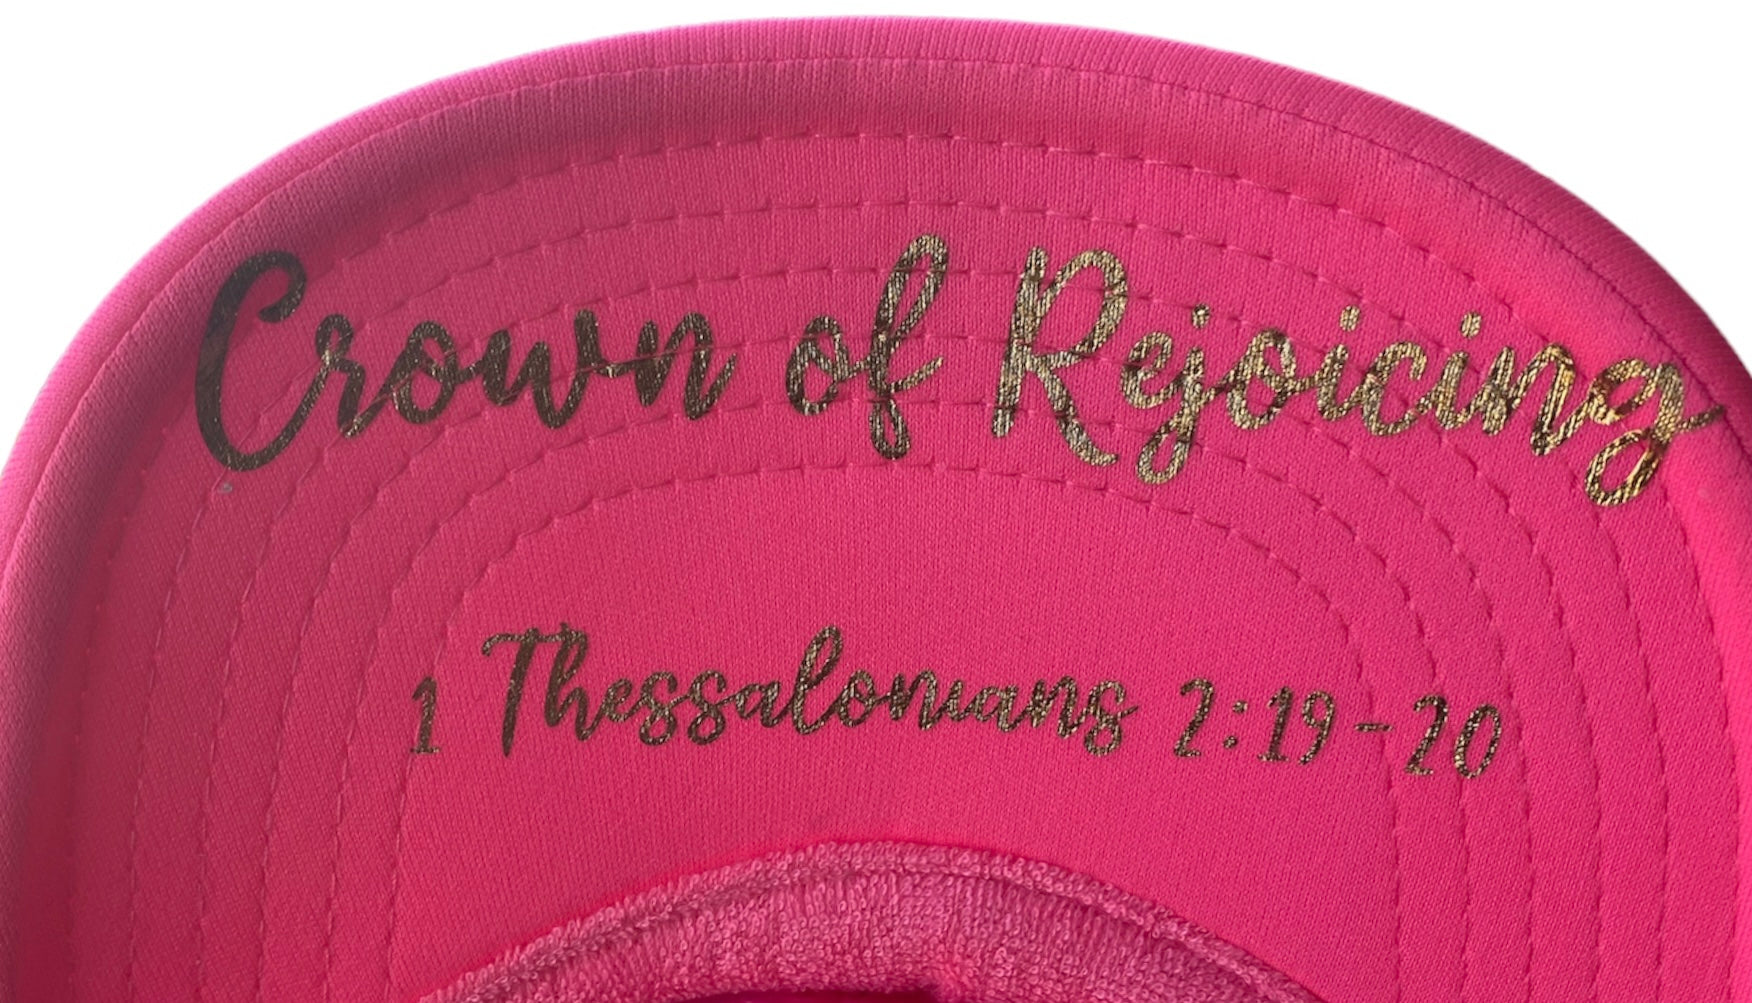 “Crown of Rejoicing” Neon Pink Trucker Hat